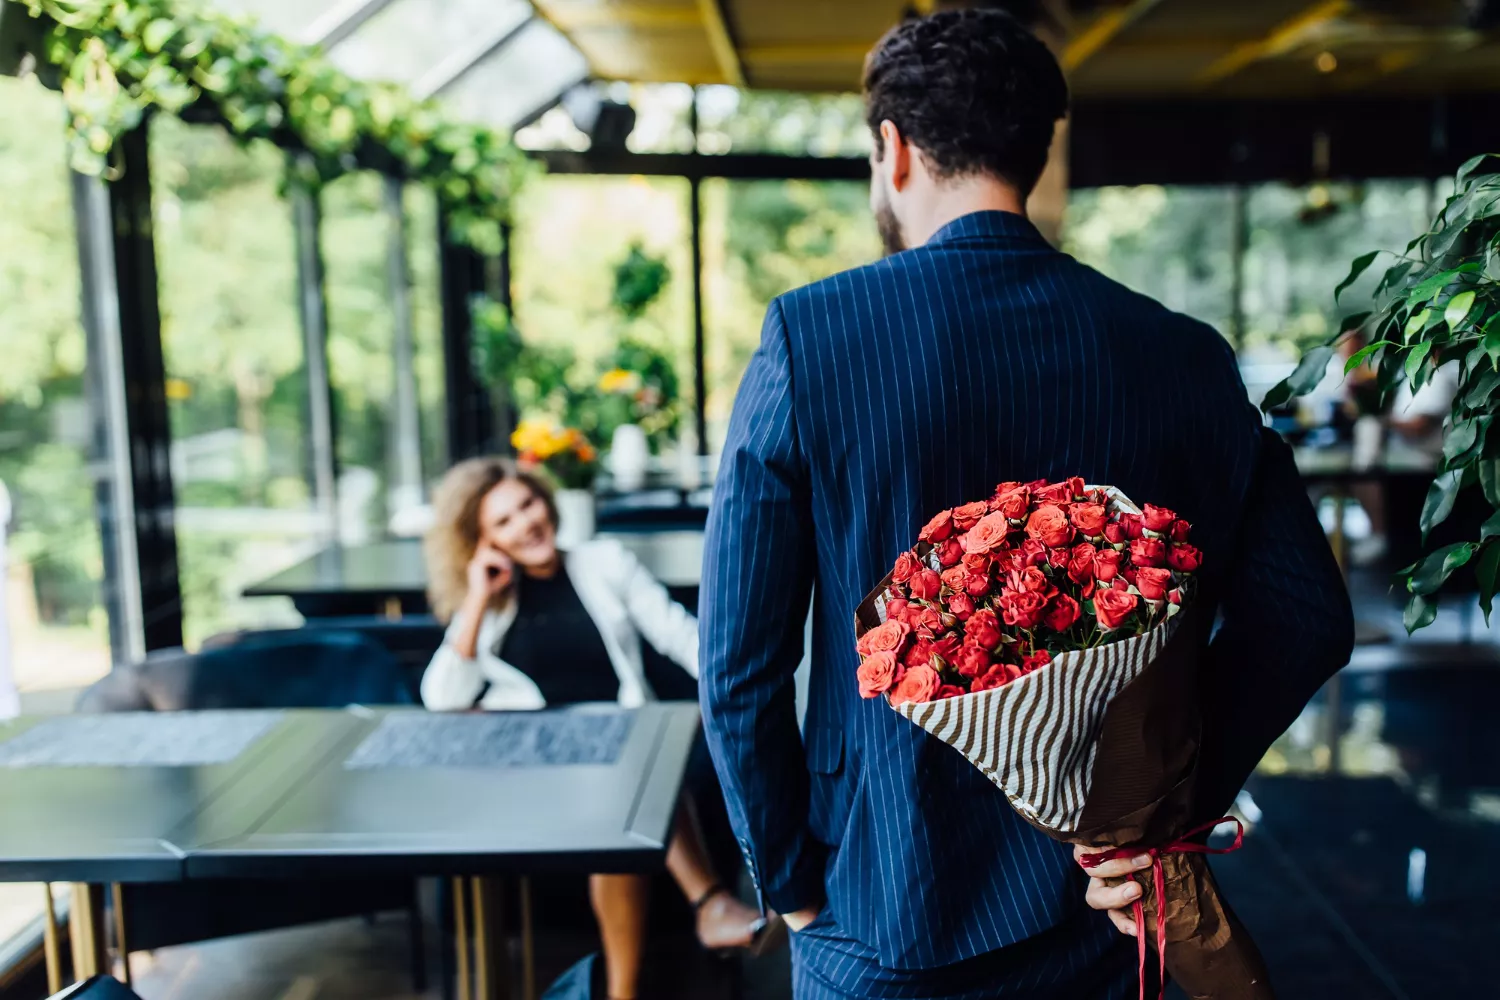 求婚花束價錢依據花束中的花材、花朵支數而有所不同。